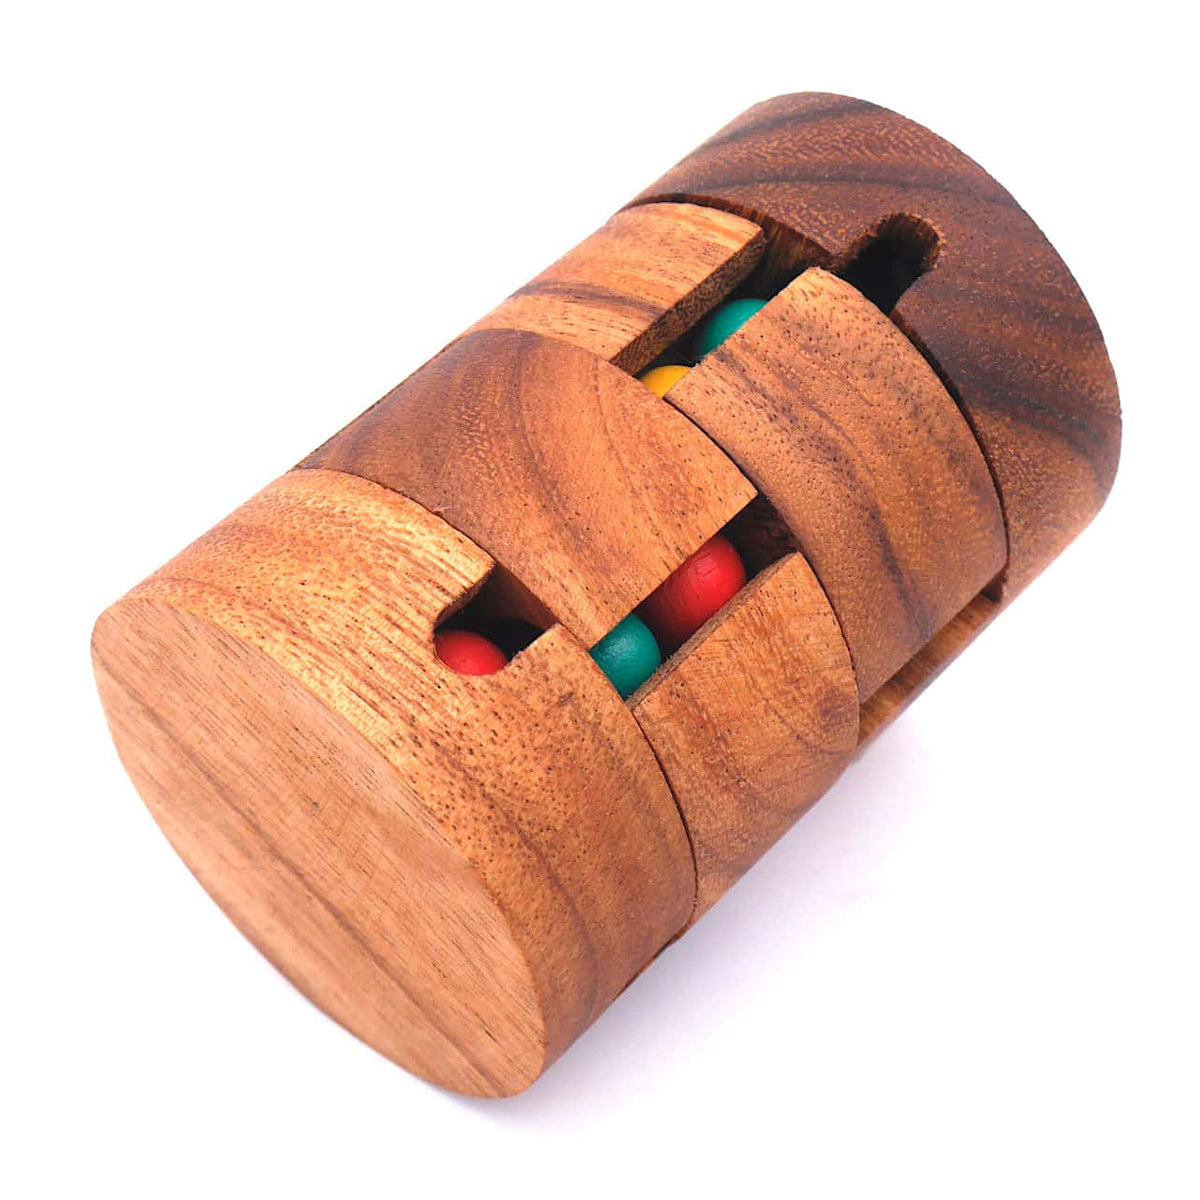 Das Dreh-Puzzle aus Holz mit zwei drehbaren Ringen und vier Schächten mit farbigen Holzkugeln.